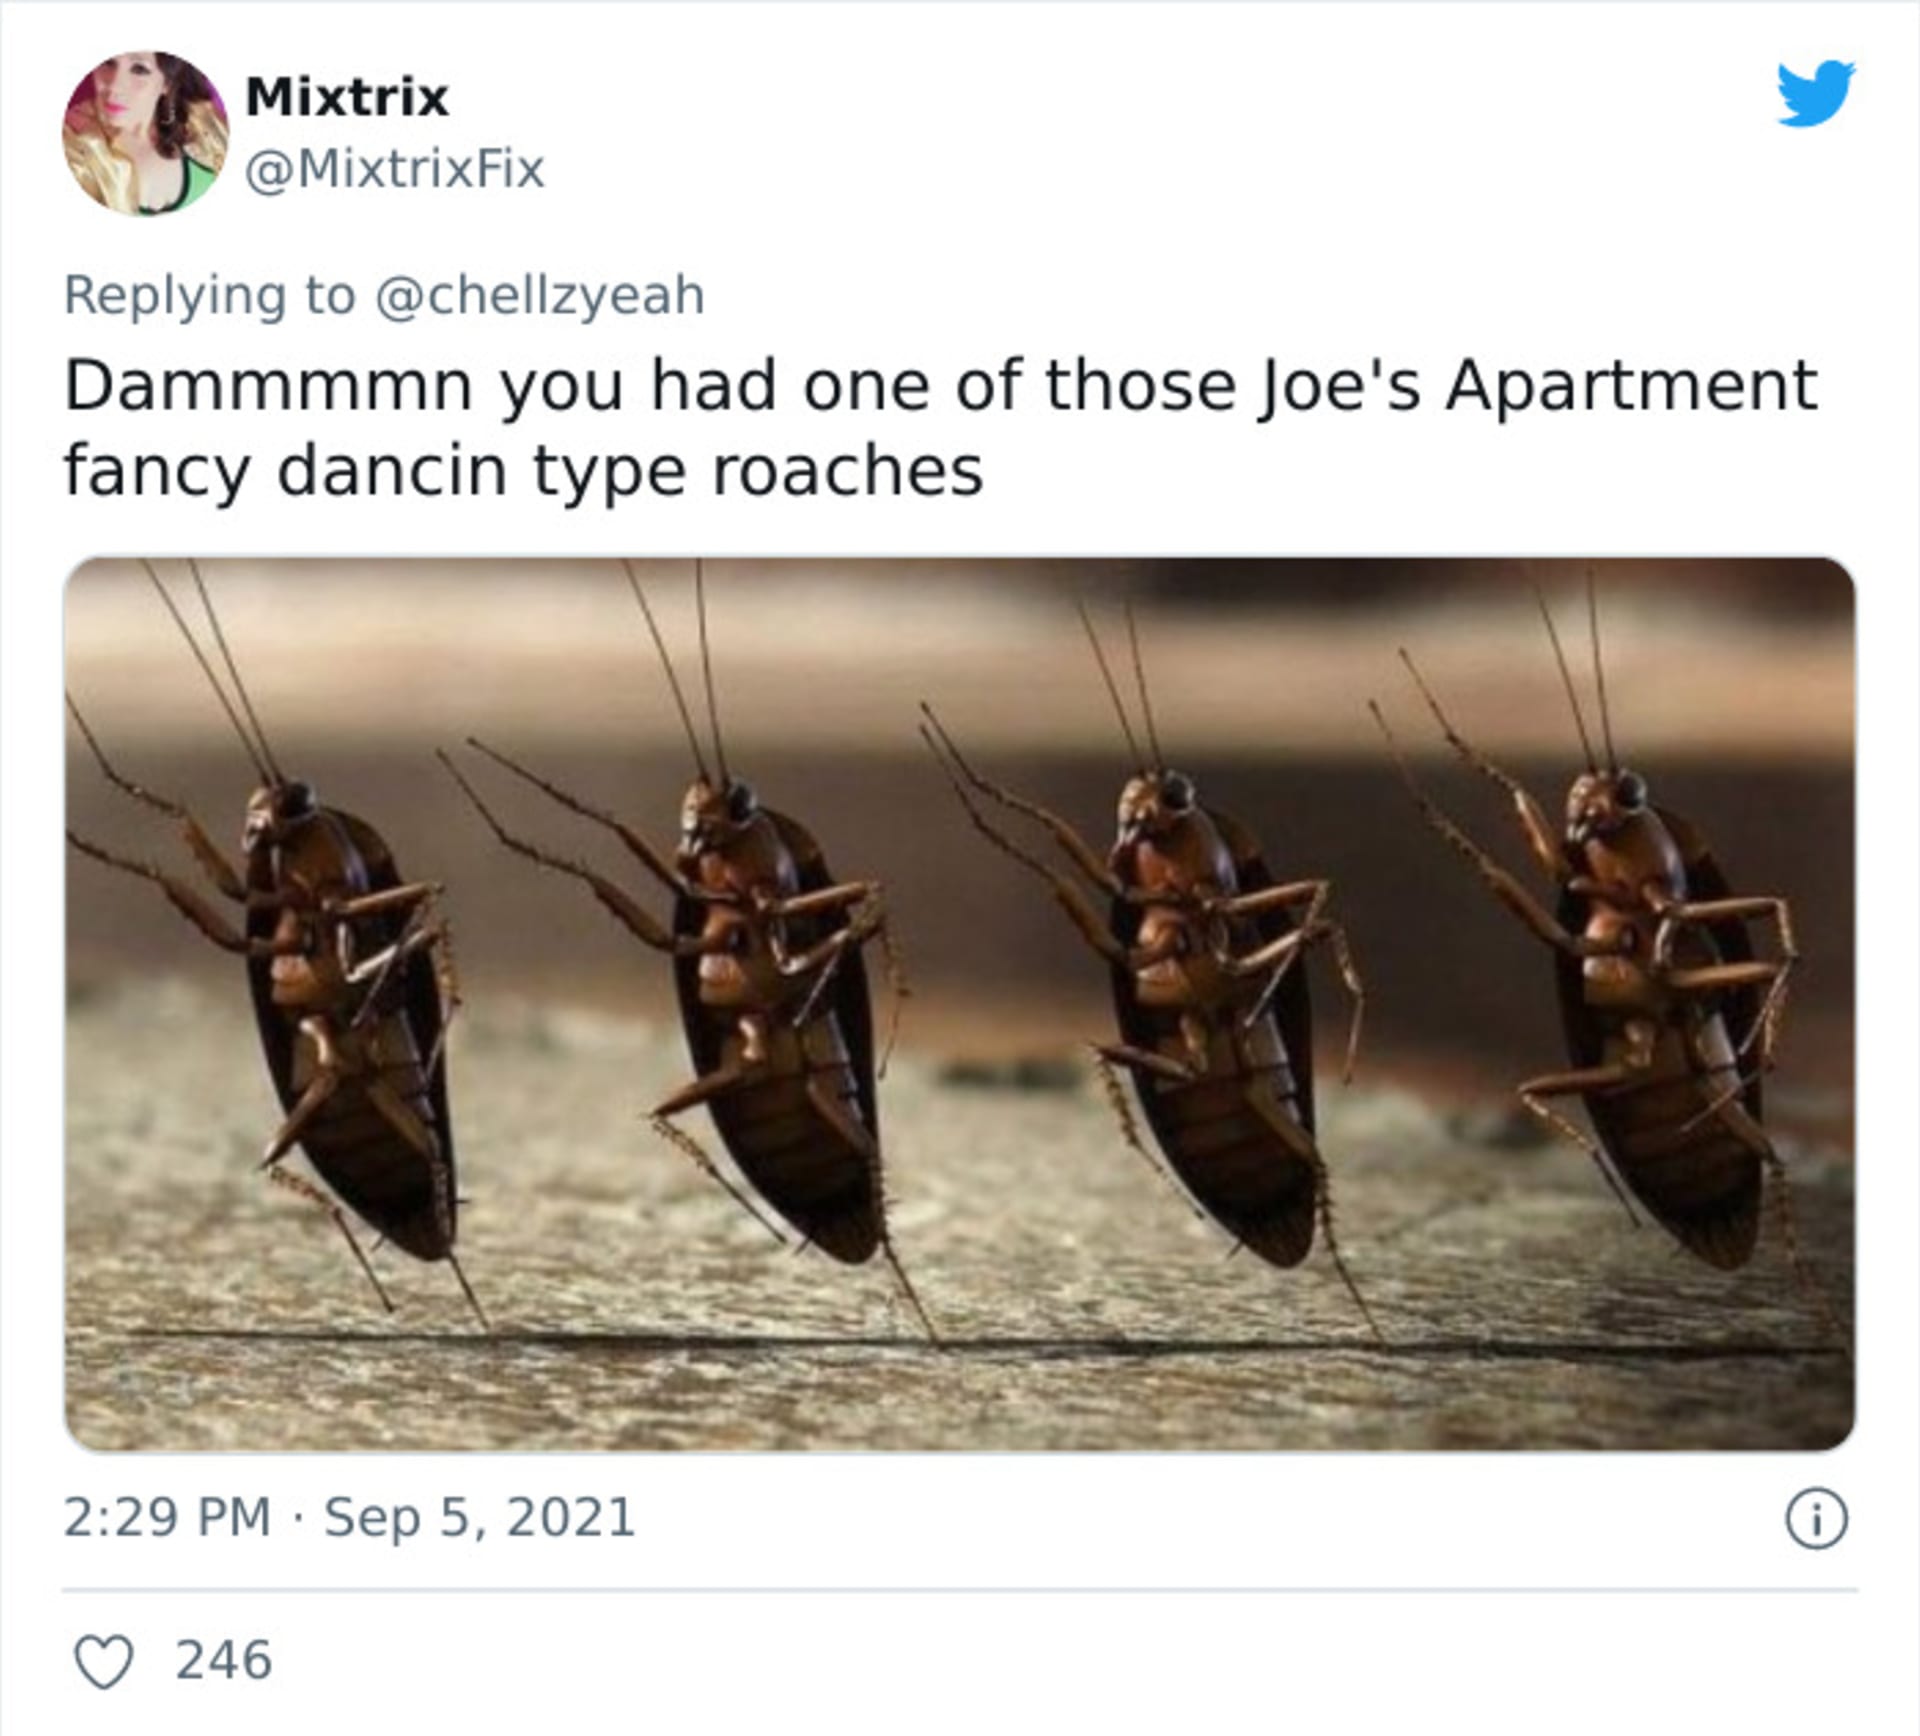 Fotka švába se stala hitem internetu